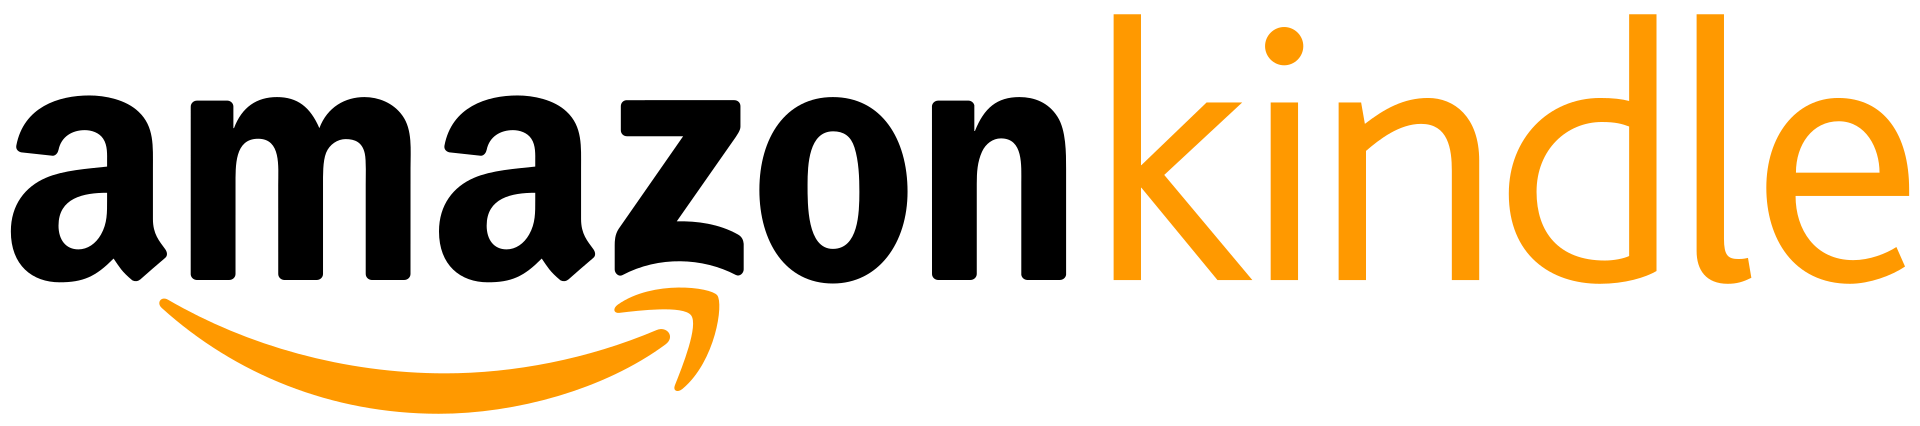 Amazon Kindle logo.svg